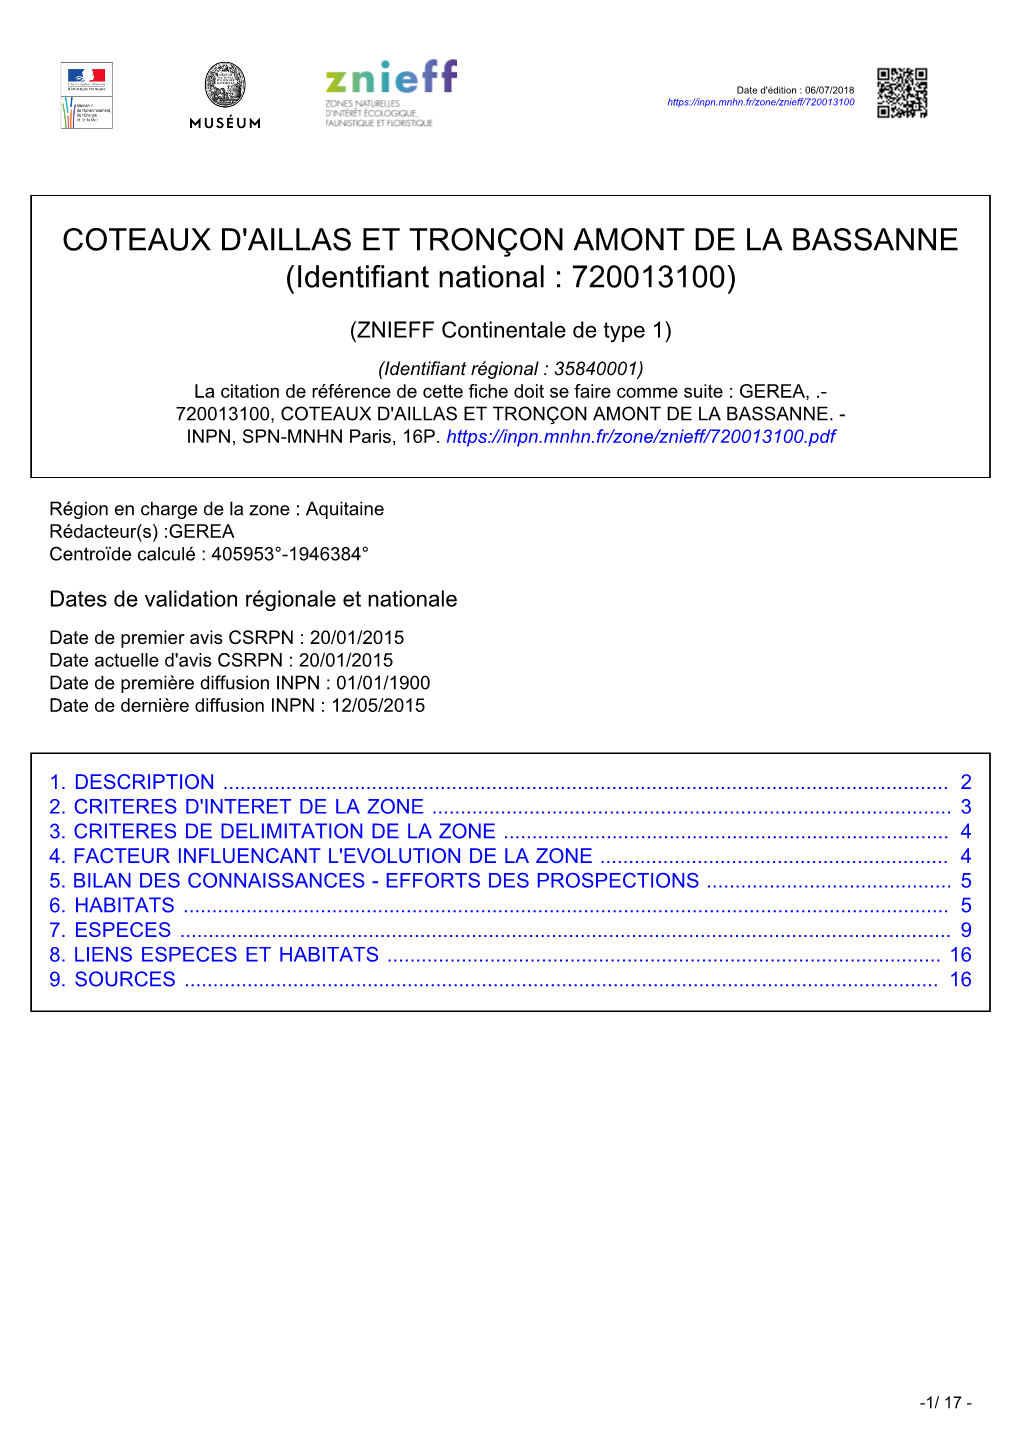 COTEAUX D'aillas ET TRONÇON AMONT DE LA BASSANNE (Identifiant National : 720013100)